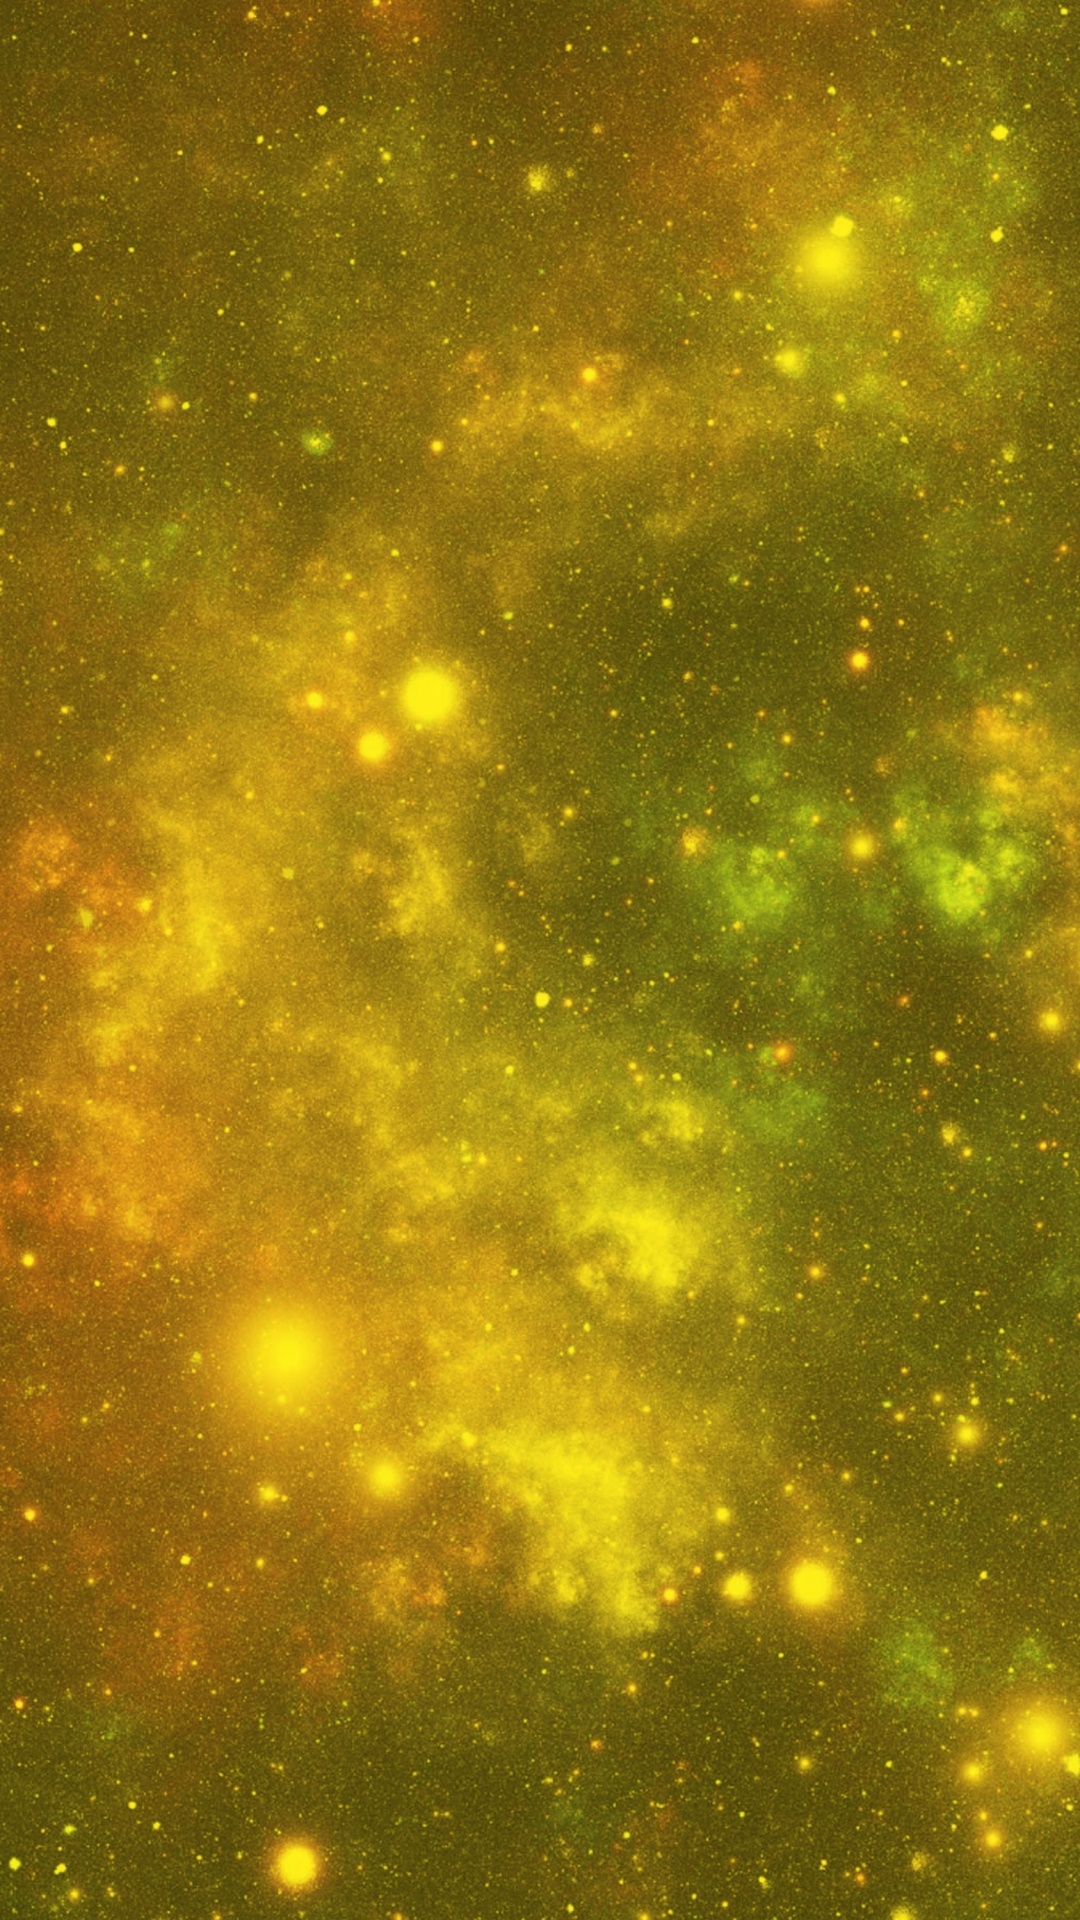 Estrellas Verdes y Amarillas en el Cielo. Wallpaper in 1080x1920 Resolution